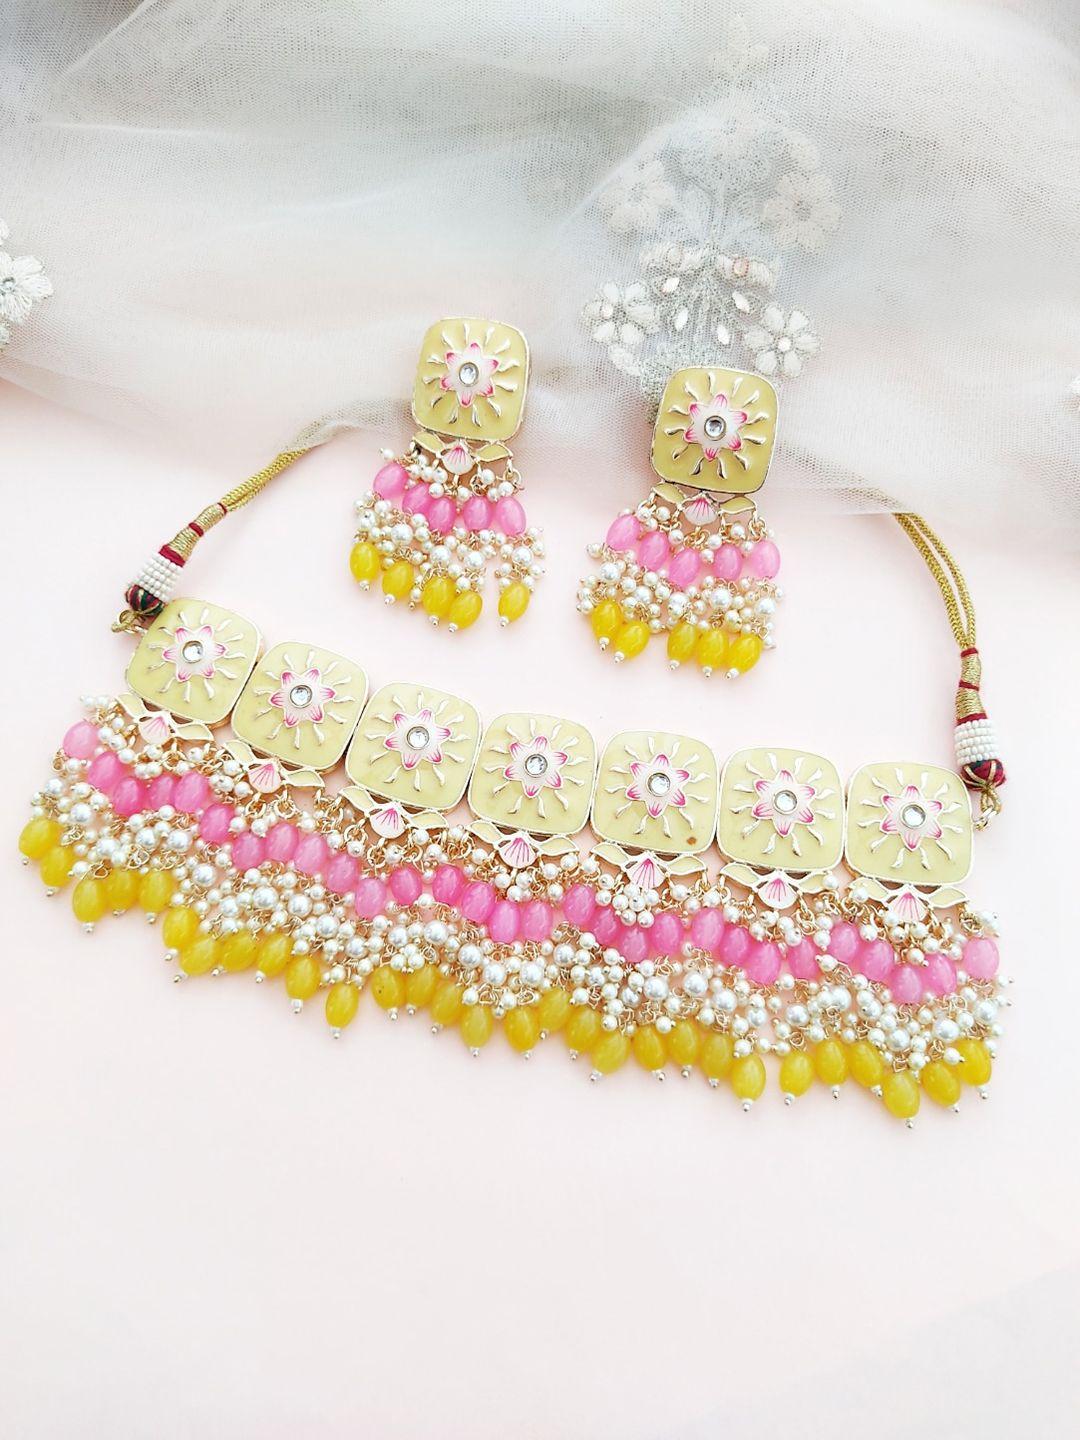 pihtara jewels gold-plated stones-studded & beaded meenakari jewellery set